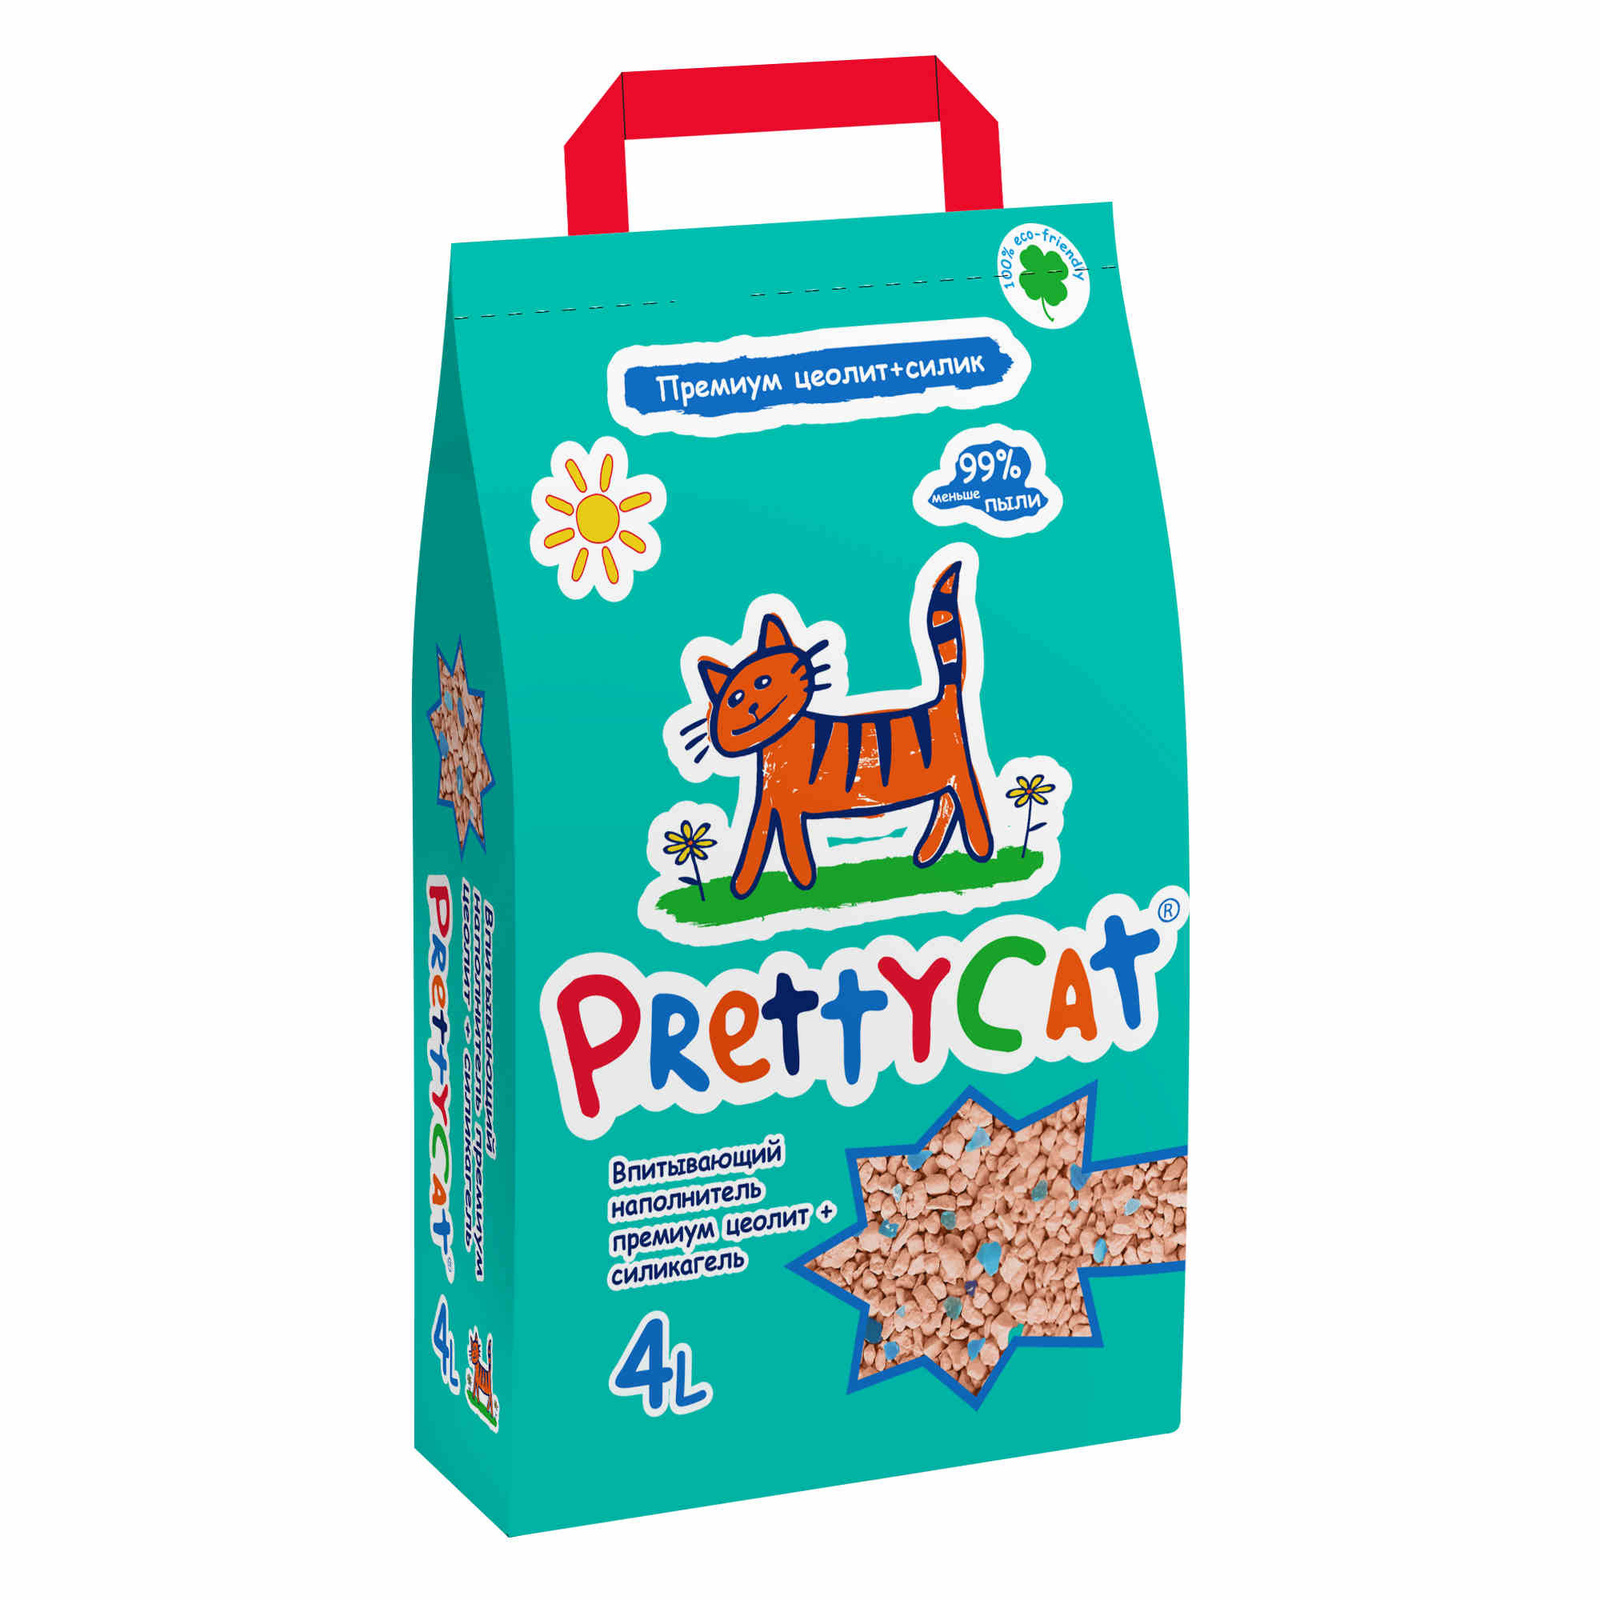 PrettyCat PrettyCat наполнитель впитывающий для кошачьих туалетов Premium (20 кг) prettycat prettycat наполнитель впитывающий для кошачьих туалетов 20 кг